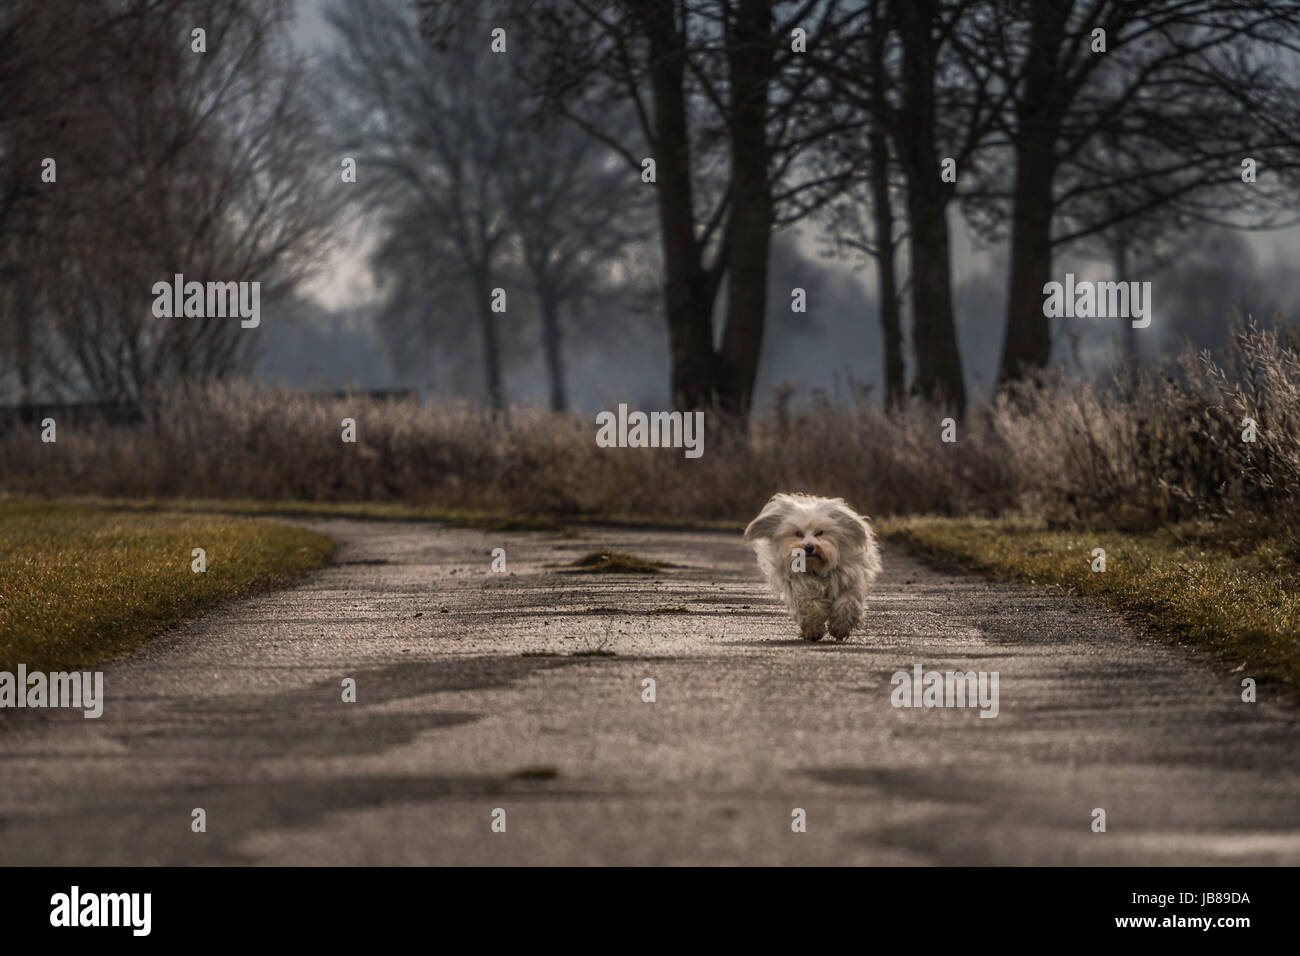 Ein Langhaar-Hund Kommt Auf Den Fotografen Zugelaufen, Im Hintergrund Eine Bäume Und Sträucher. Stockfoto